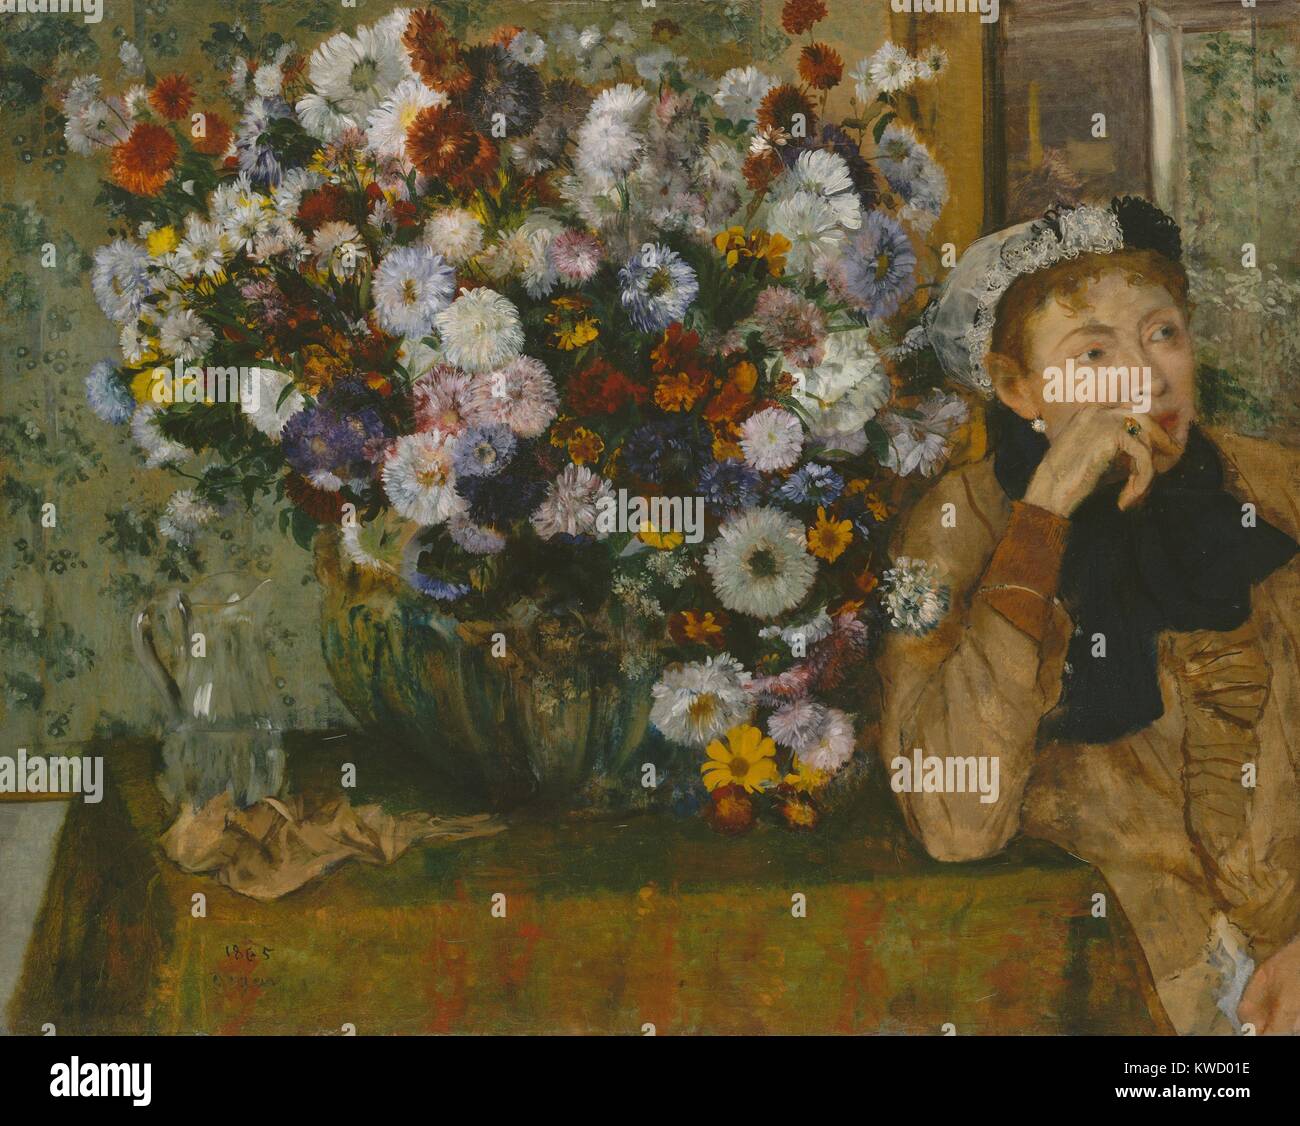 Eine Frau sitzt neben einer Vase mit Blumen, von Edgar Degas, 1865, französischer Impressionisten Öl Malerei. Degas angenommen Impressionistischen bildliche Elemente, wie der sitters 7/8-Platzierung auf der Leinwand und den abgeflachten Raum des großen Blumenarrangement (BSLOC 2017 3 97) Stockfoto